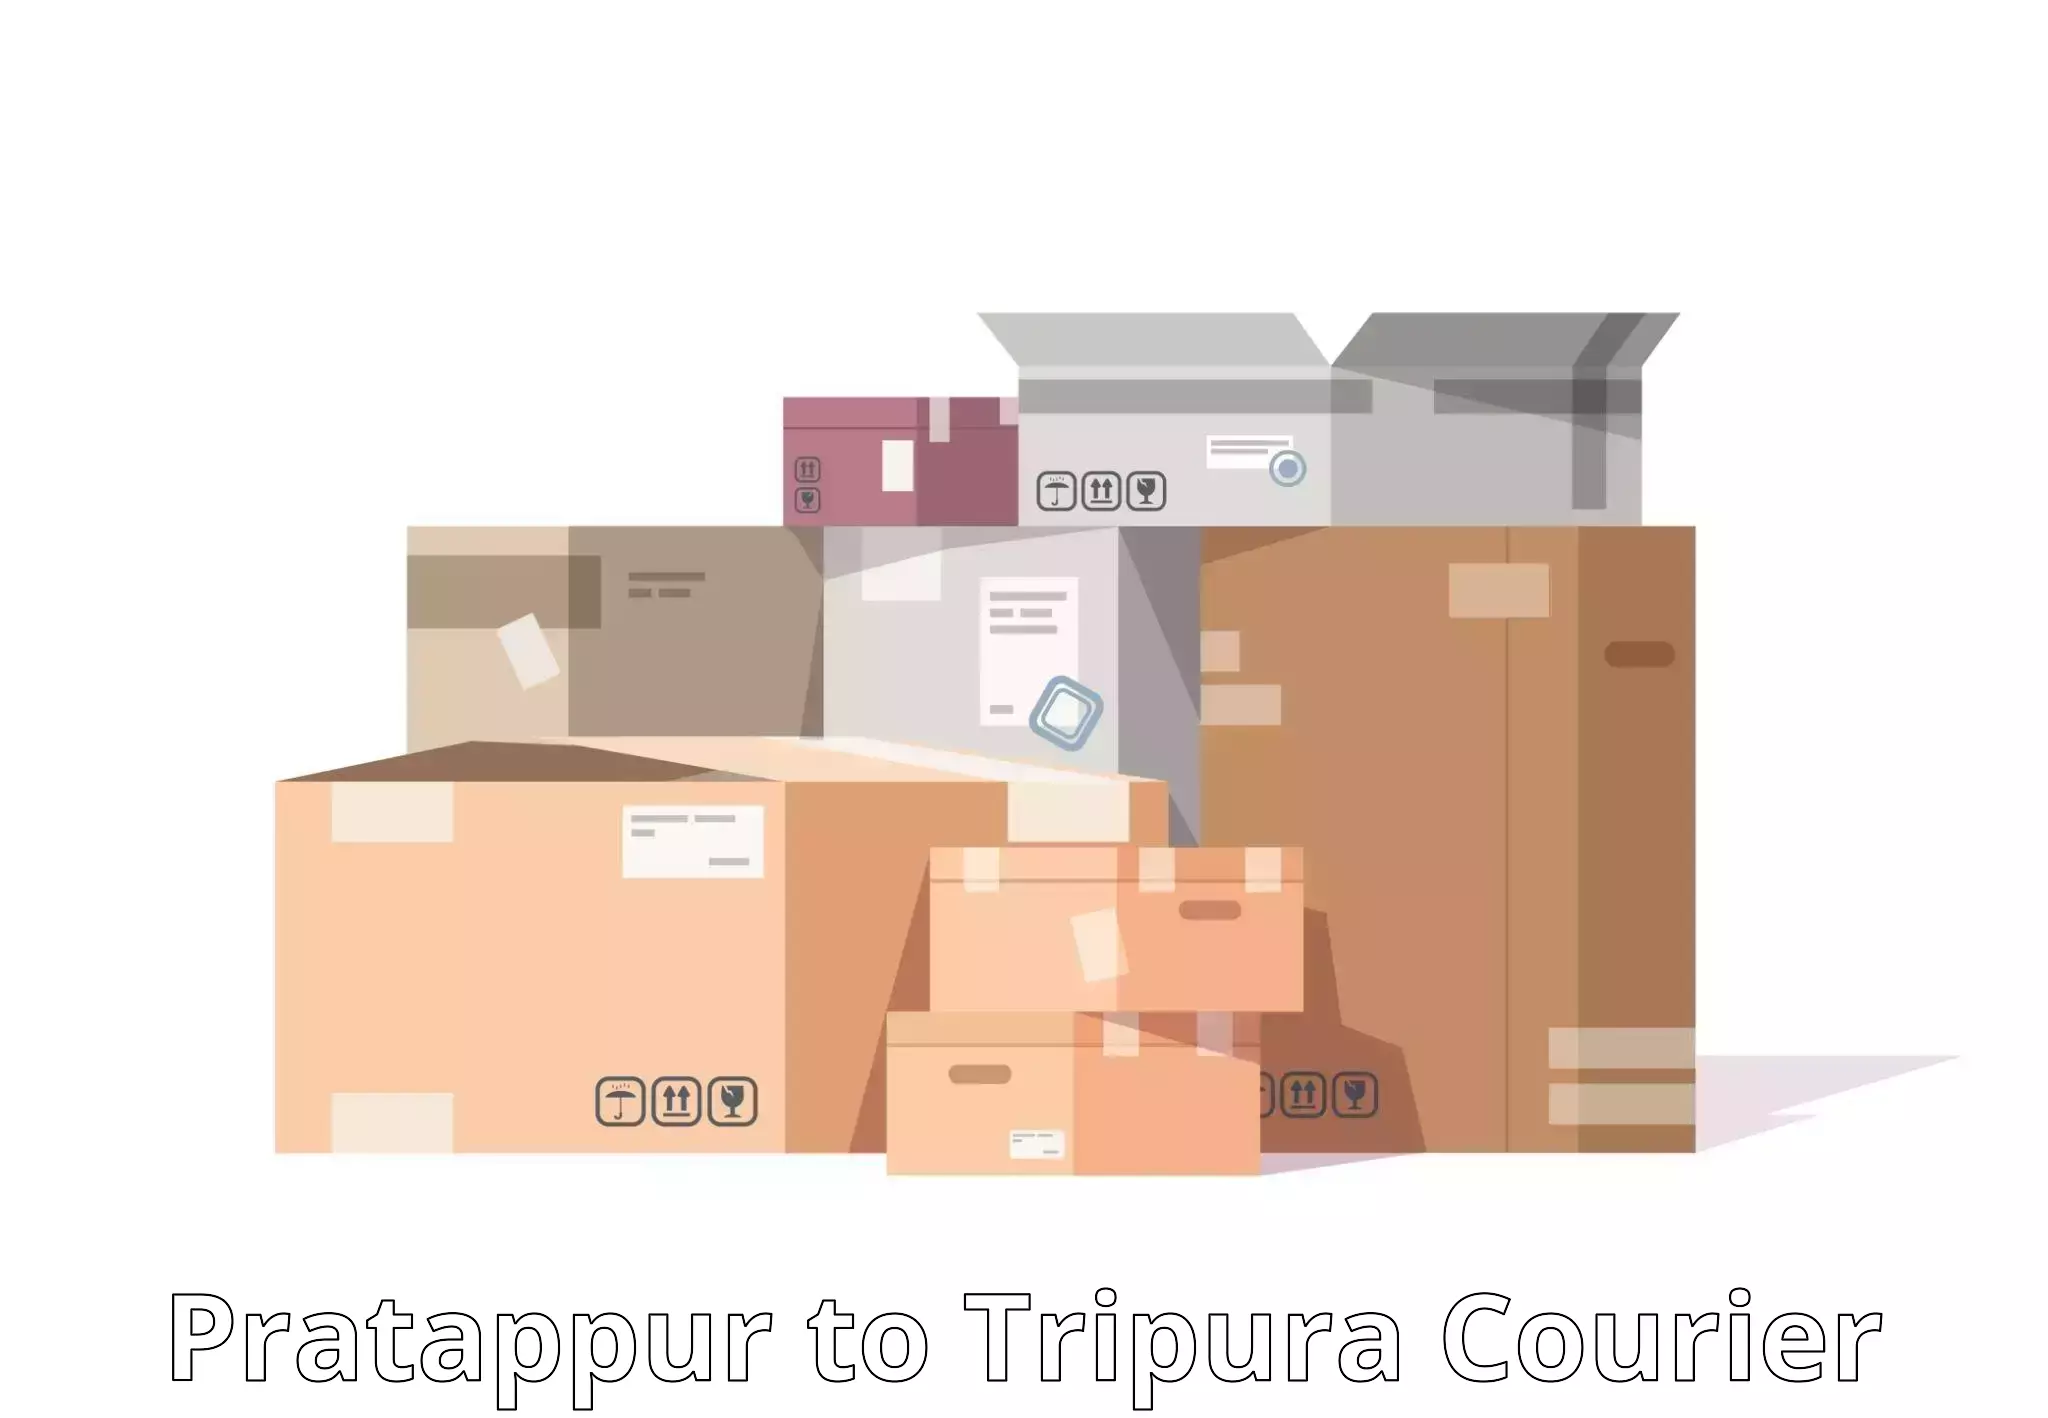 Customer-centric shipping in Pratappur to Kamalpur